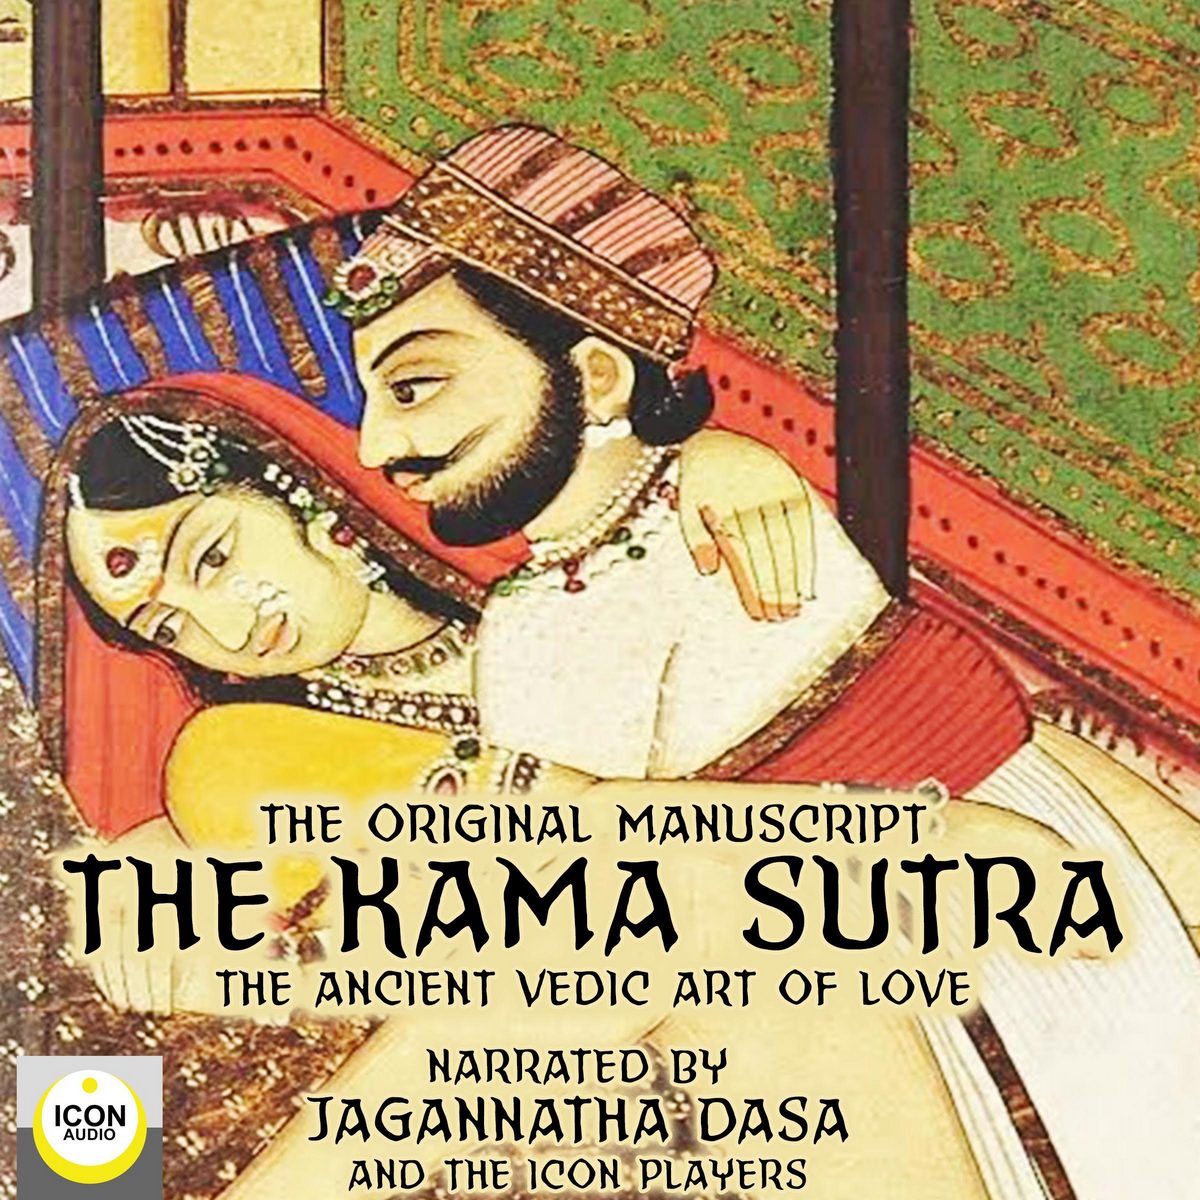 The Kama Sutra, The Original Manuscript; The Ancient Vedic Art of Love